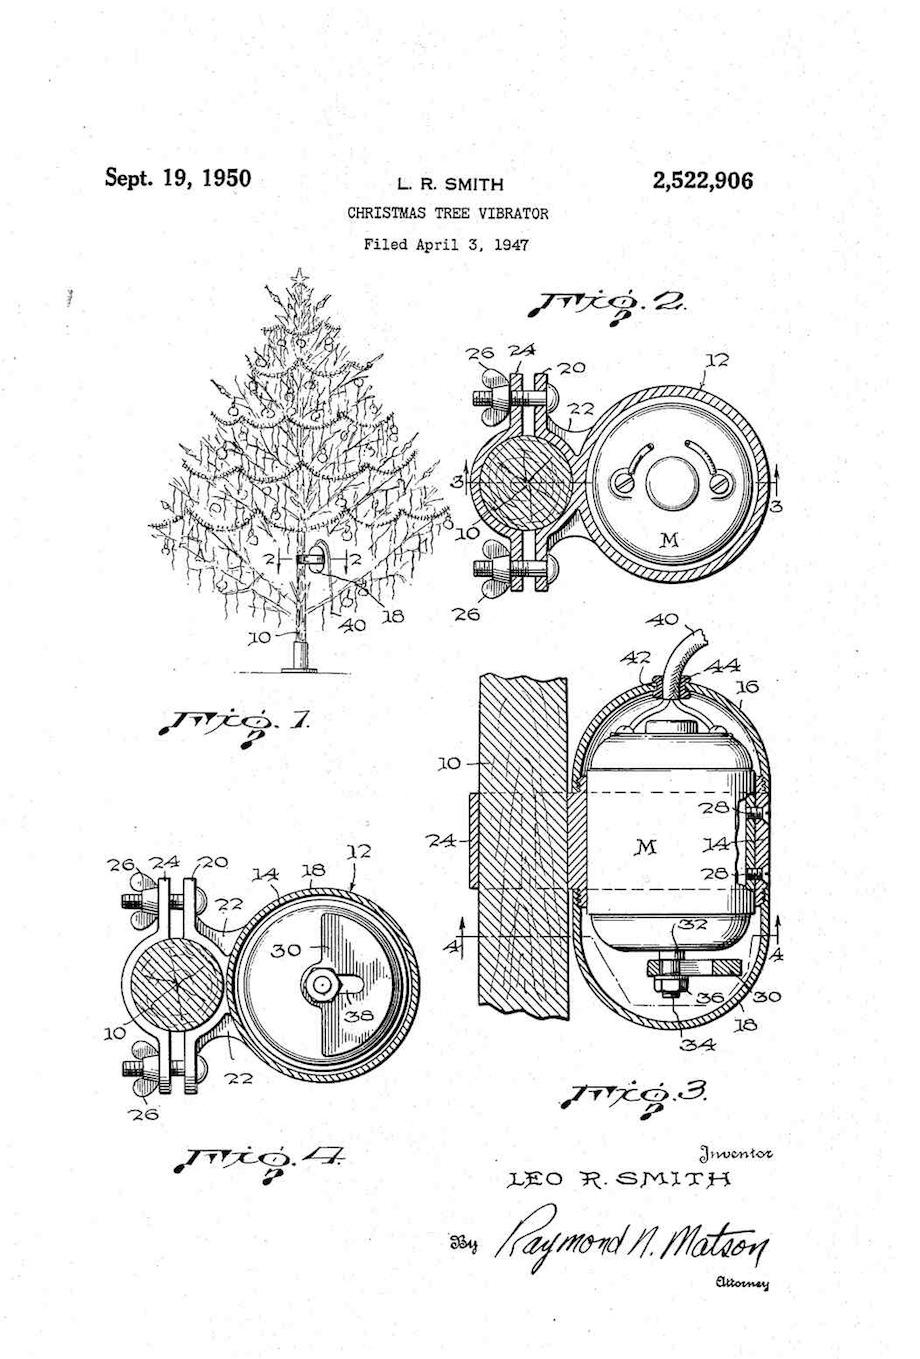 Christmas Tree Vibrator